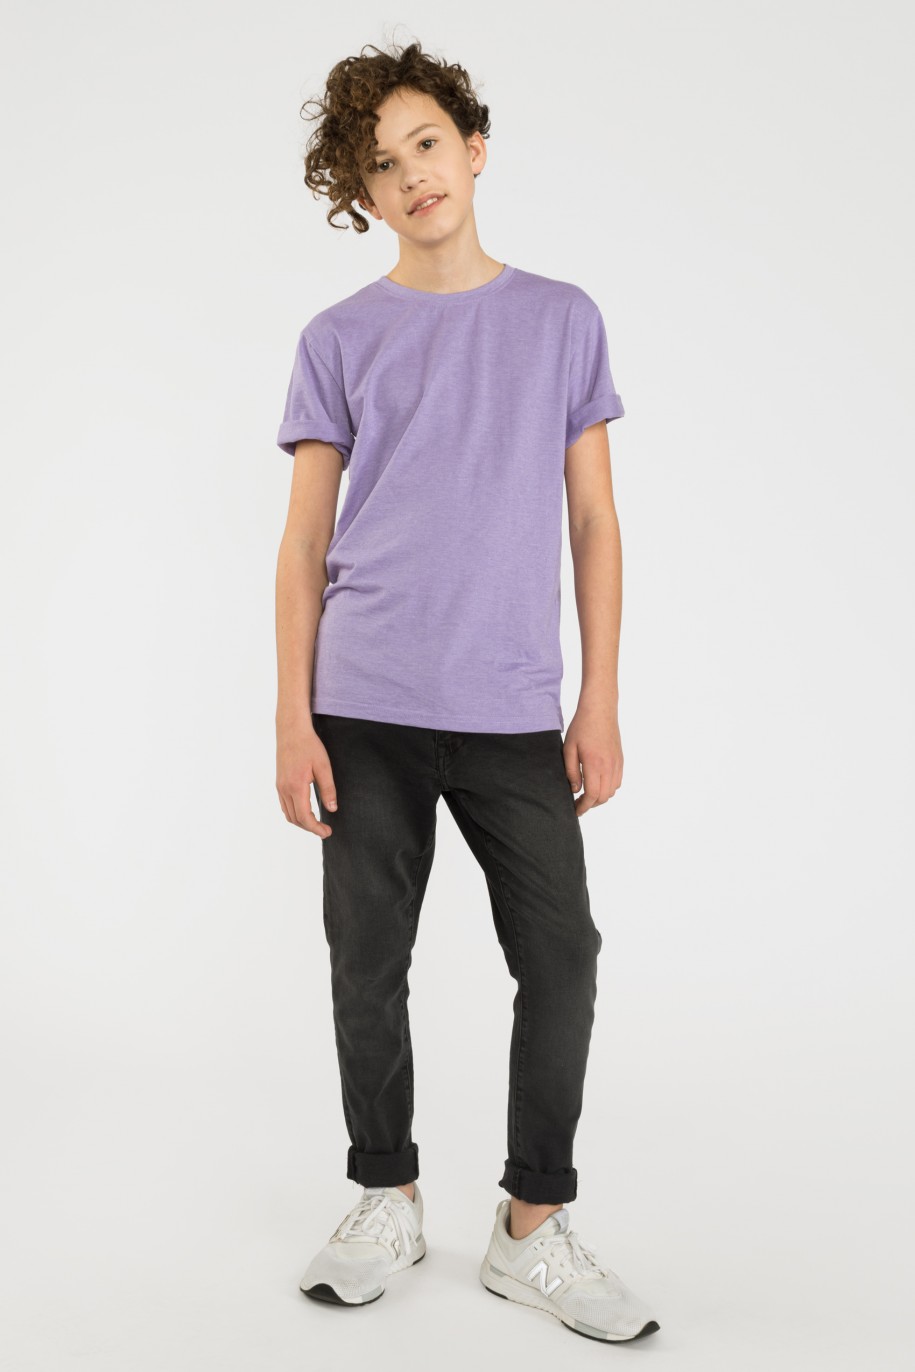 Fioletowy gładki t-shirt - 41264